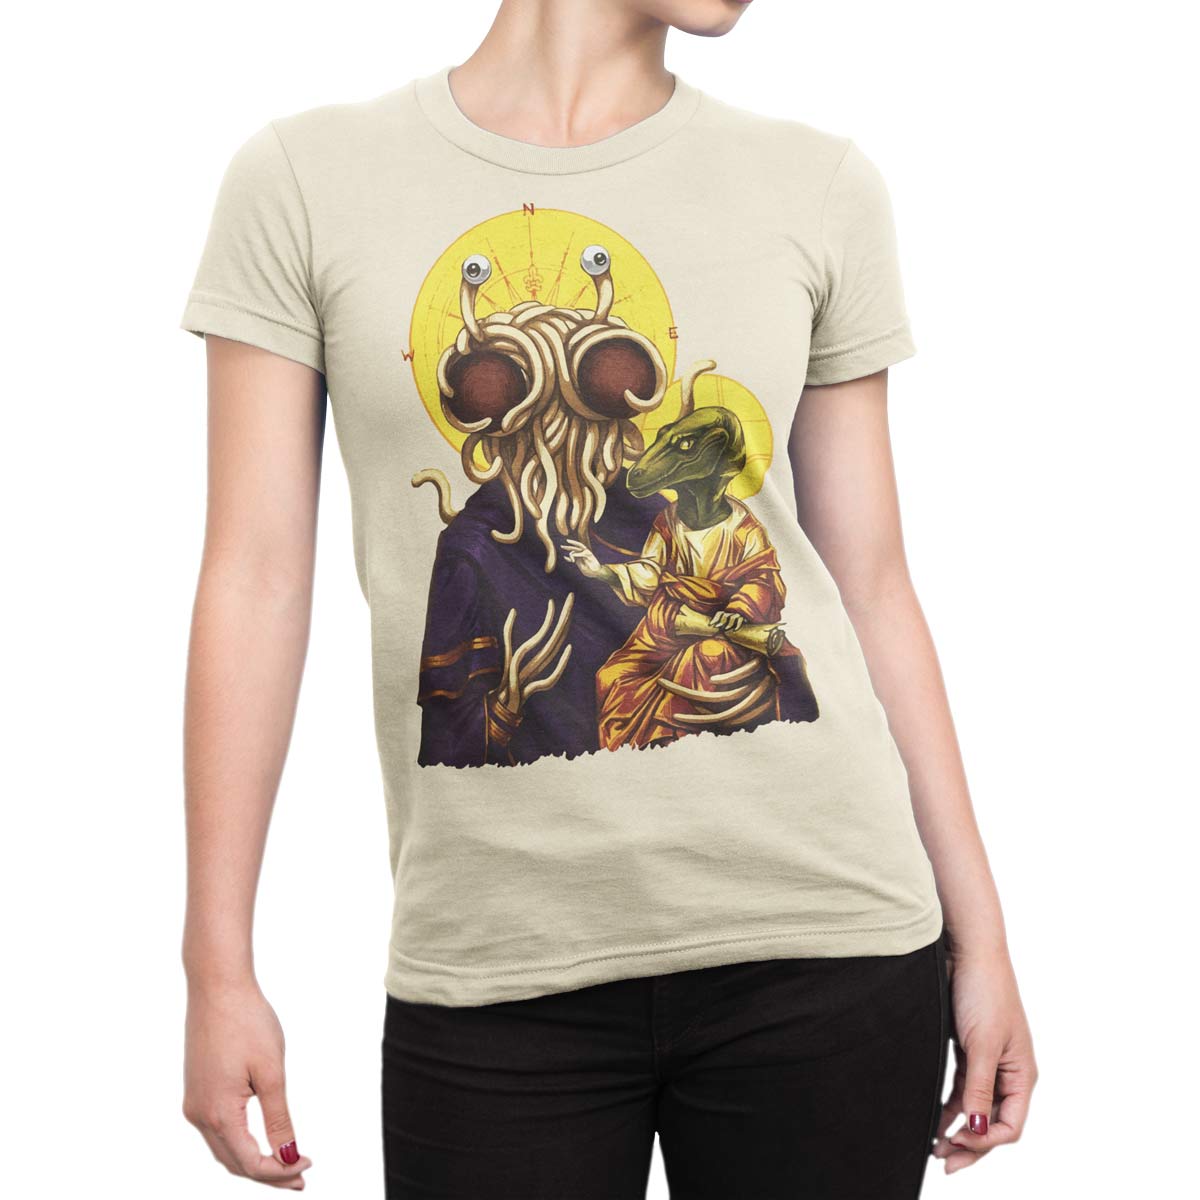 Stor mængde Døde i verden kontrollere Funny T-Shirts. "Flying Spaghetti Monster" Unisex T-Shirt. 100% Cotton.